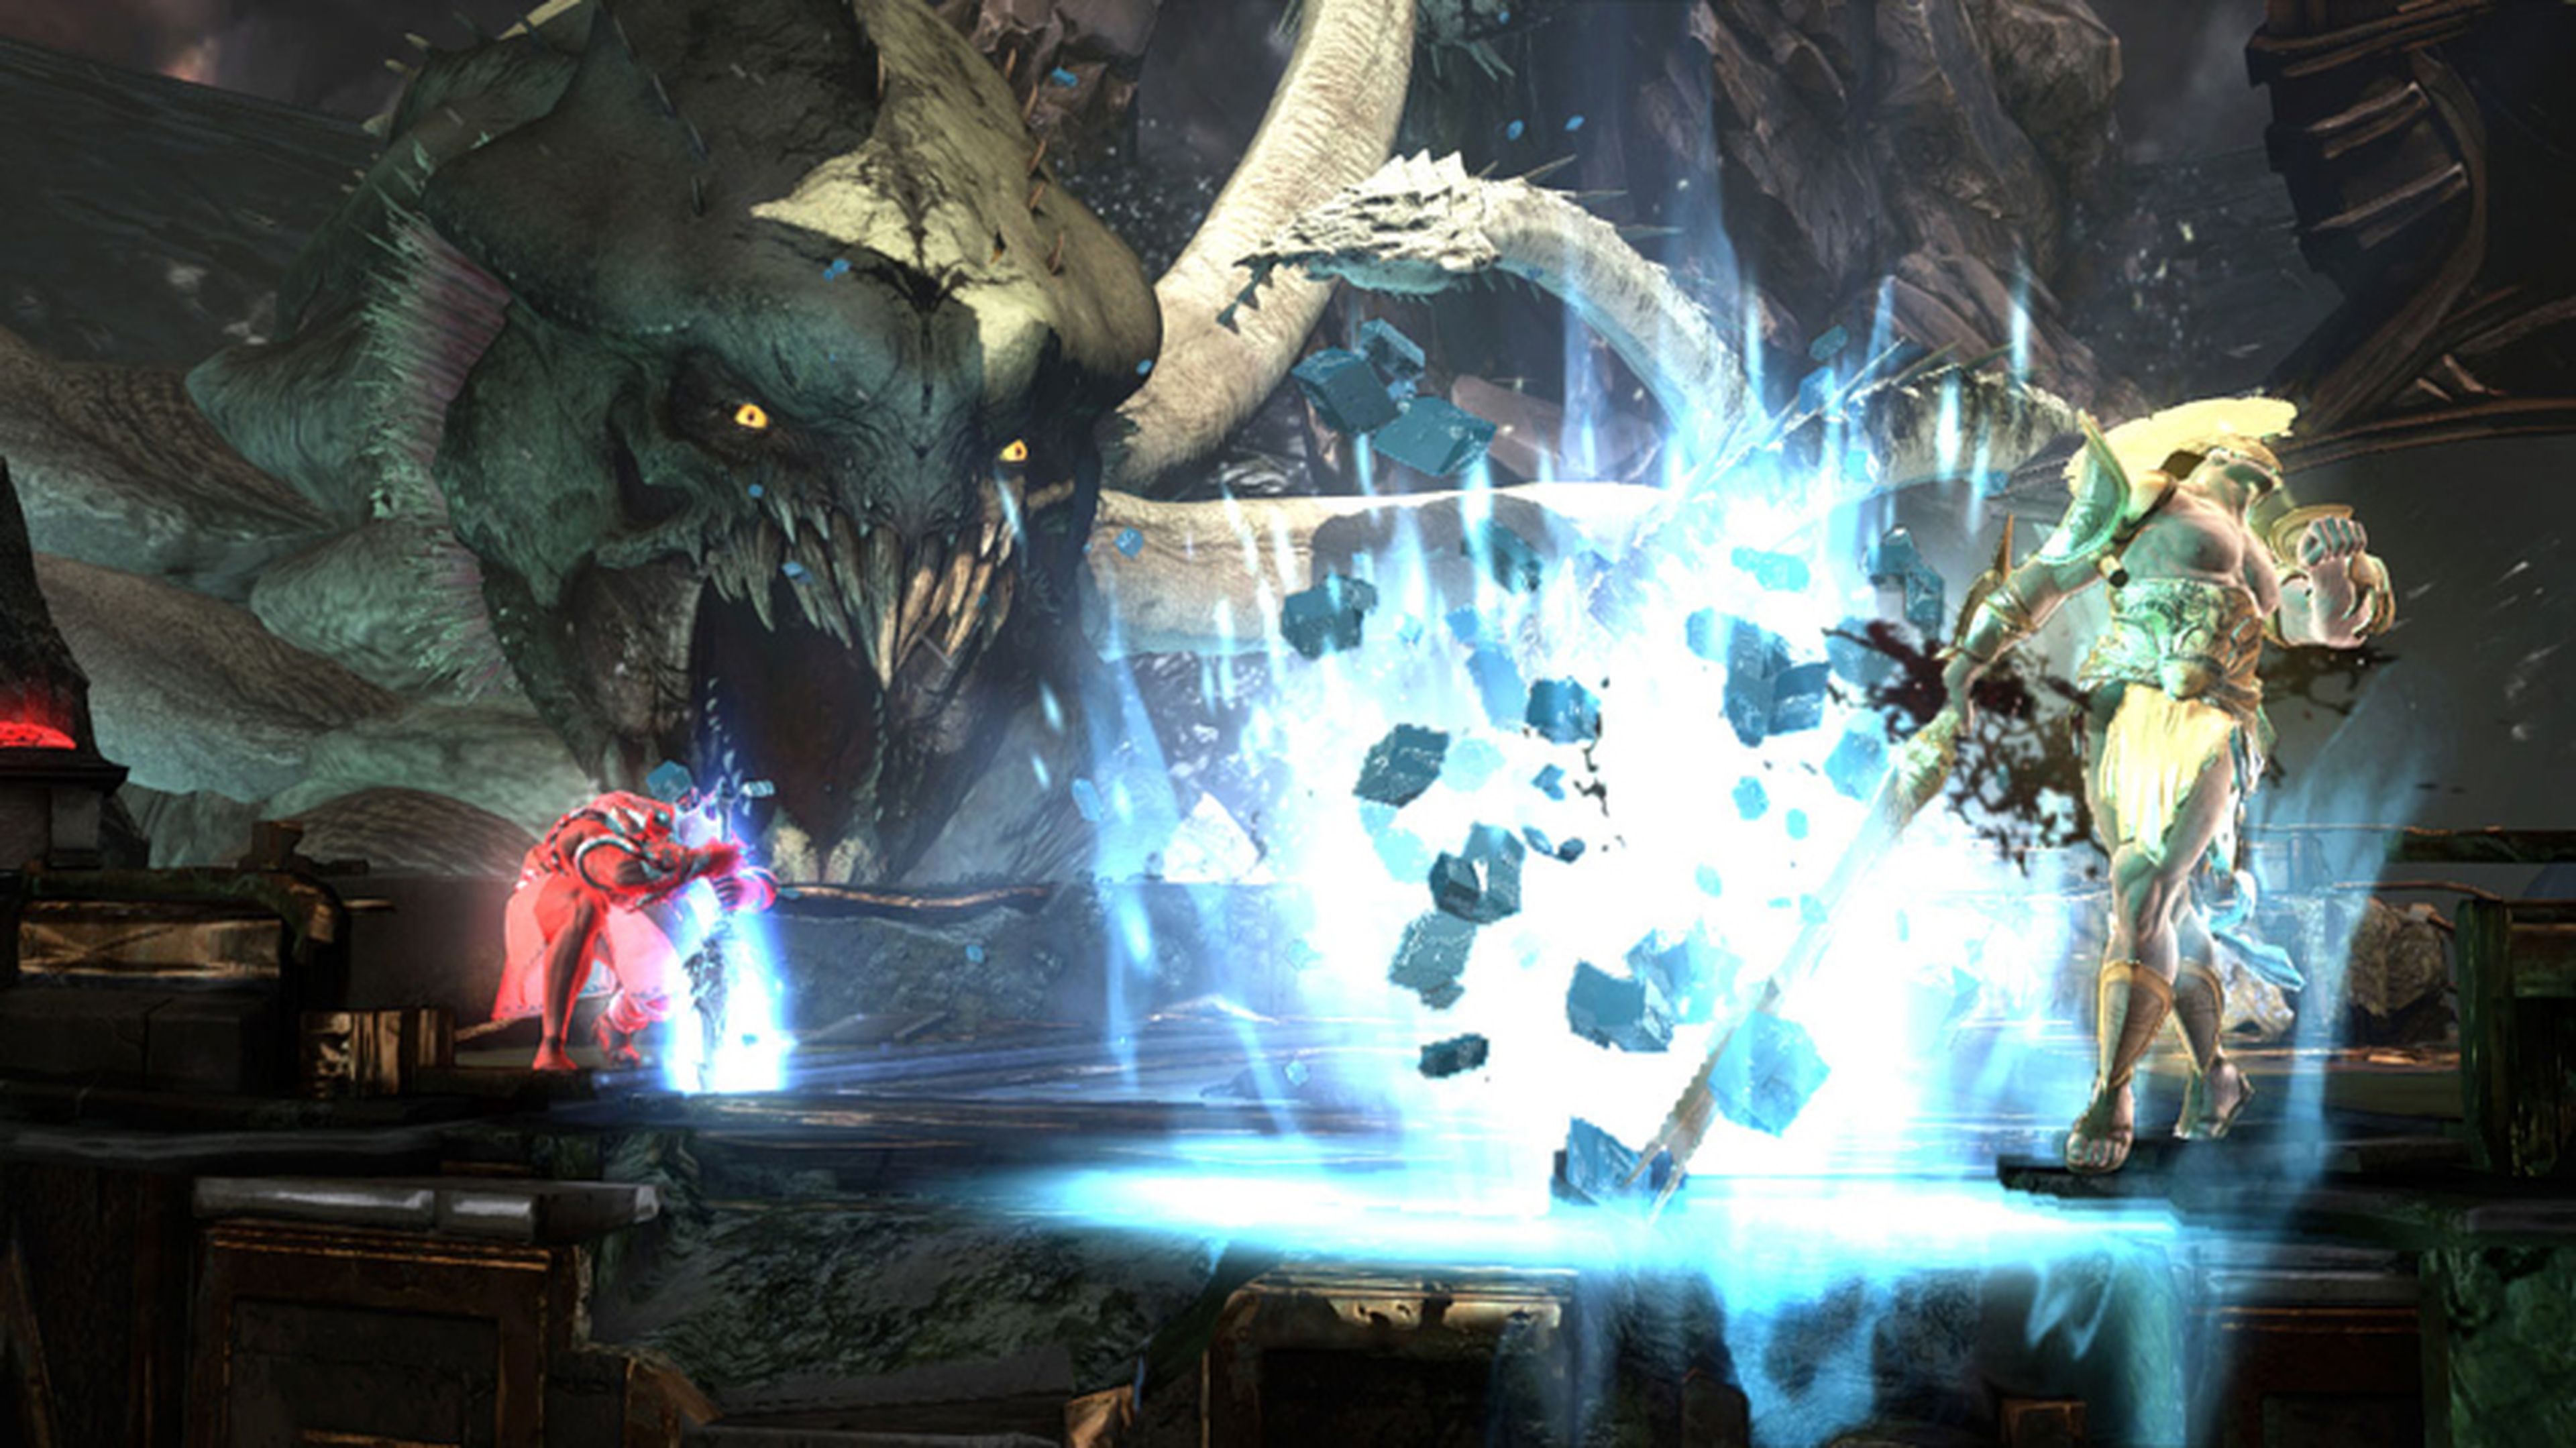 God of War: Ascension 1v1 multijugador, gratis